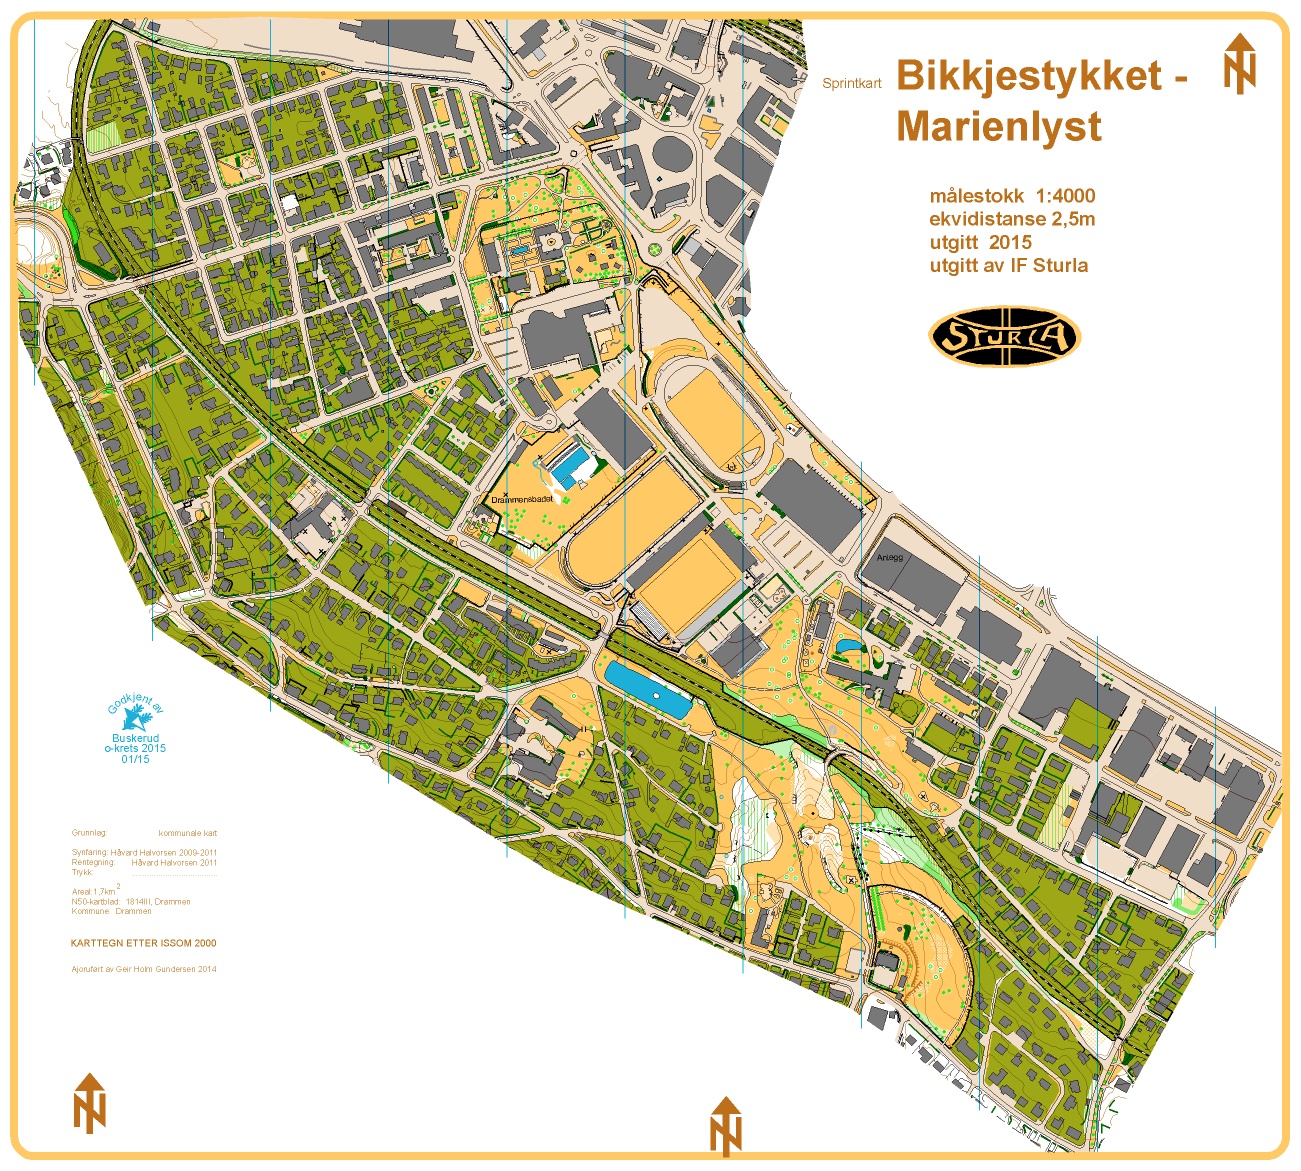 Bikkjestykket-Marienlyst (01/05/2015)